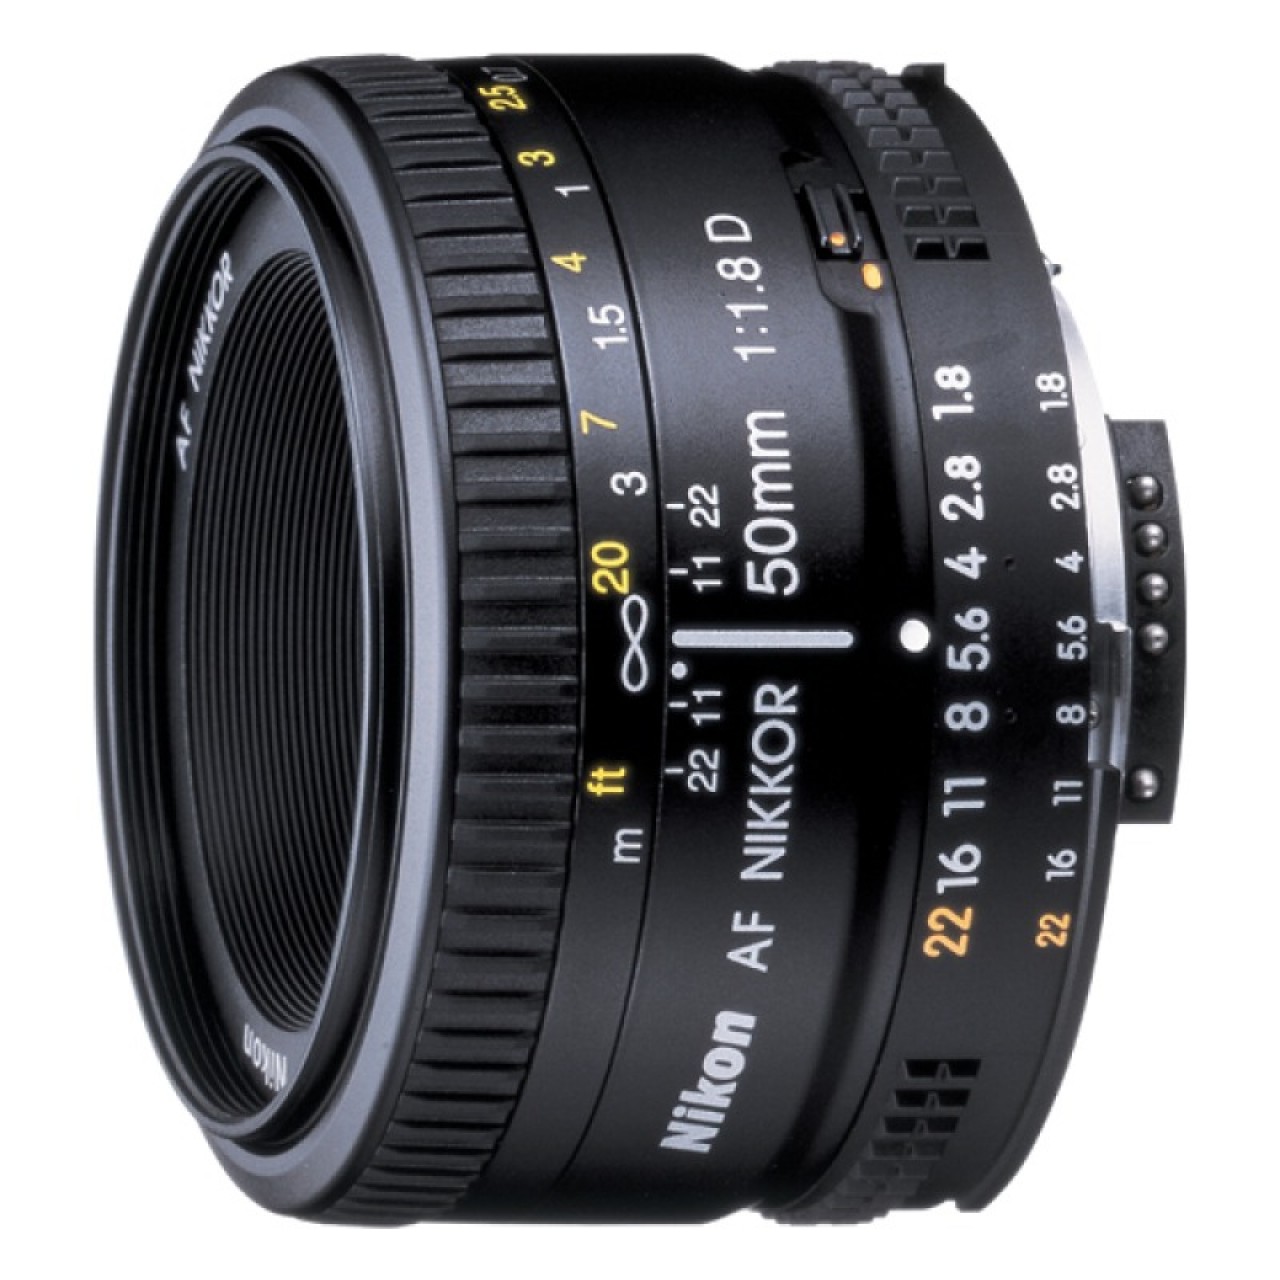 AF NIKKOR 50mm f/1.8D Lens For Nikon DSLR Camera